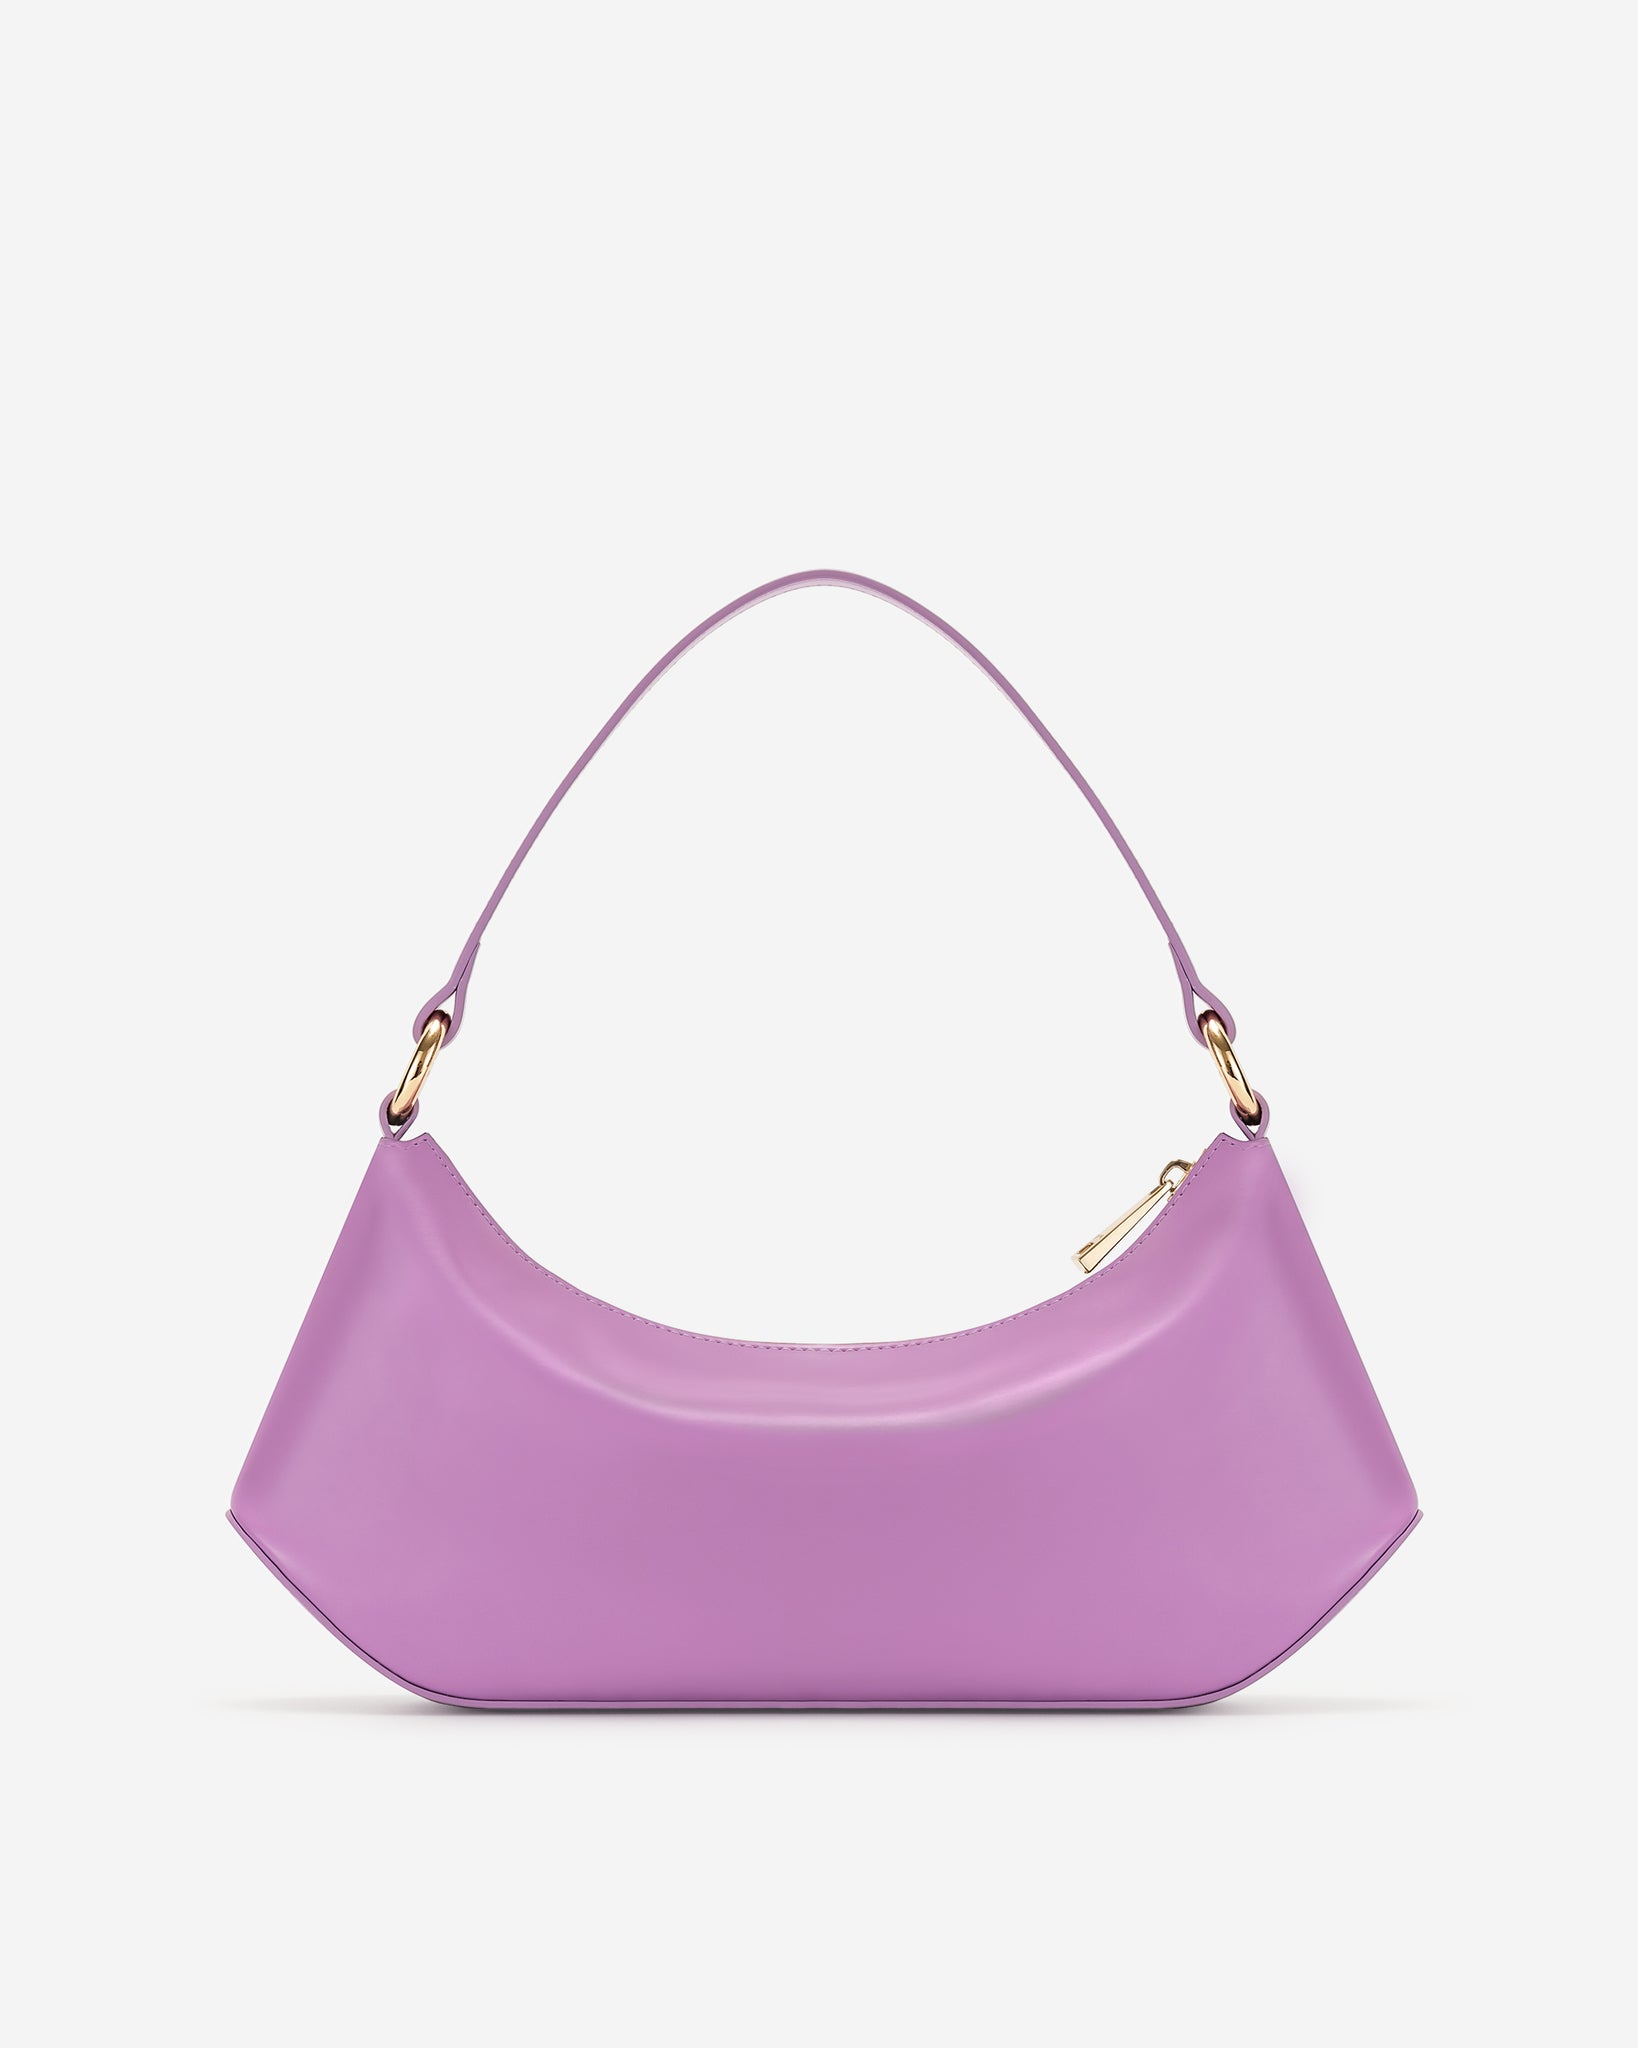 JW PEI Women's Lily Shoulder Bag - Lavender Purple